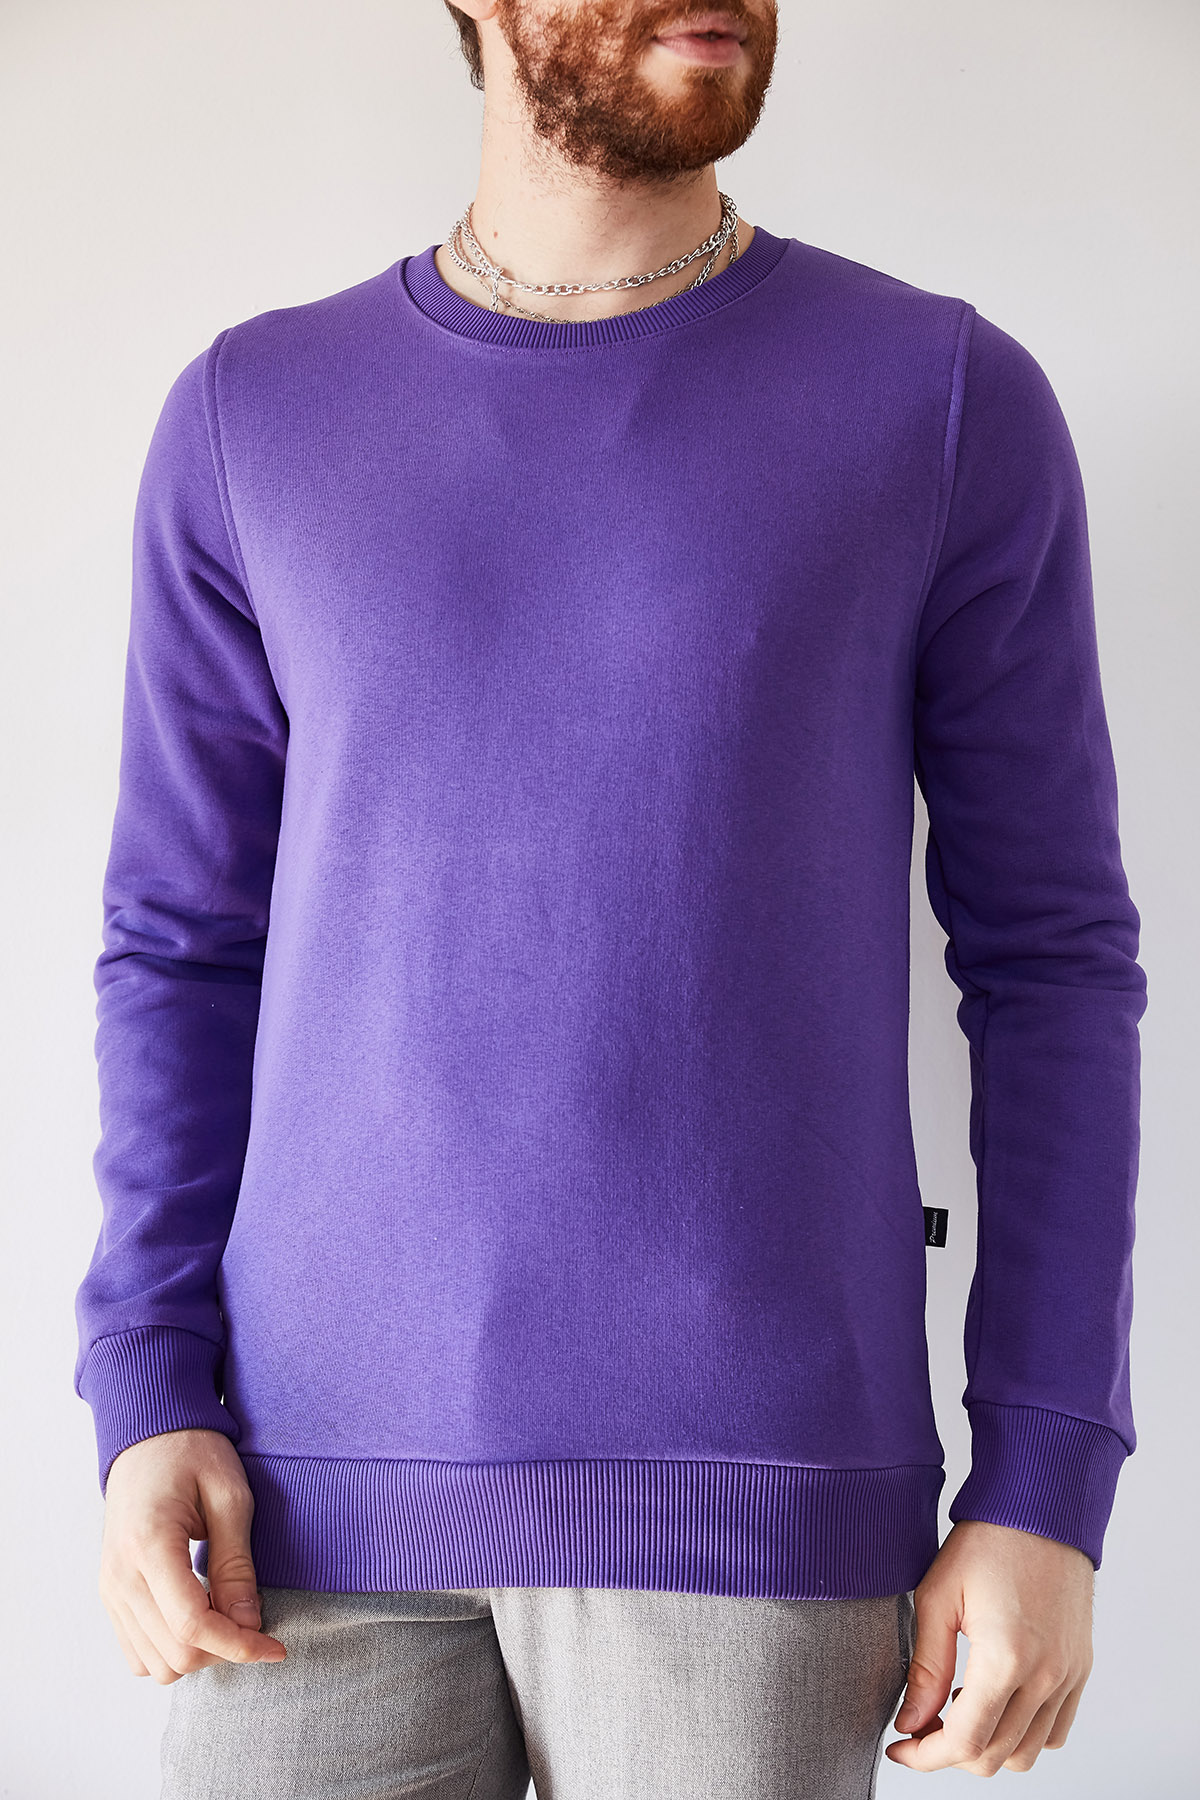 Mor Basic Sweatshirt 1KXE8-44236-06 - 1